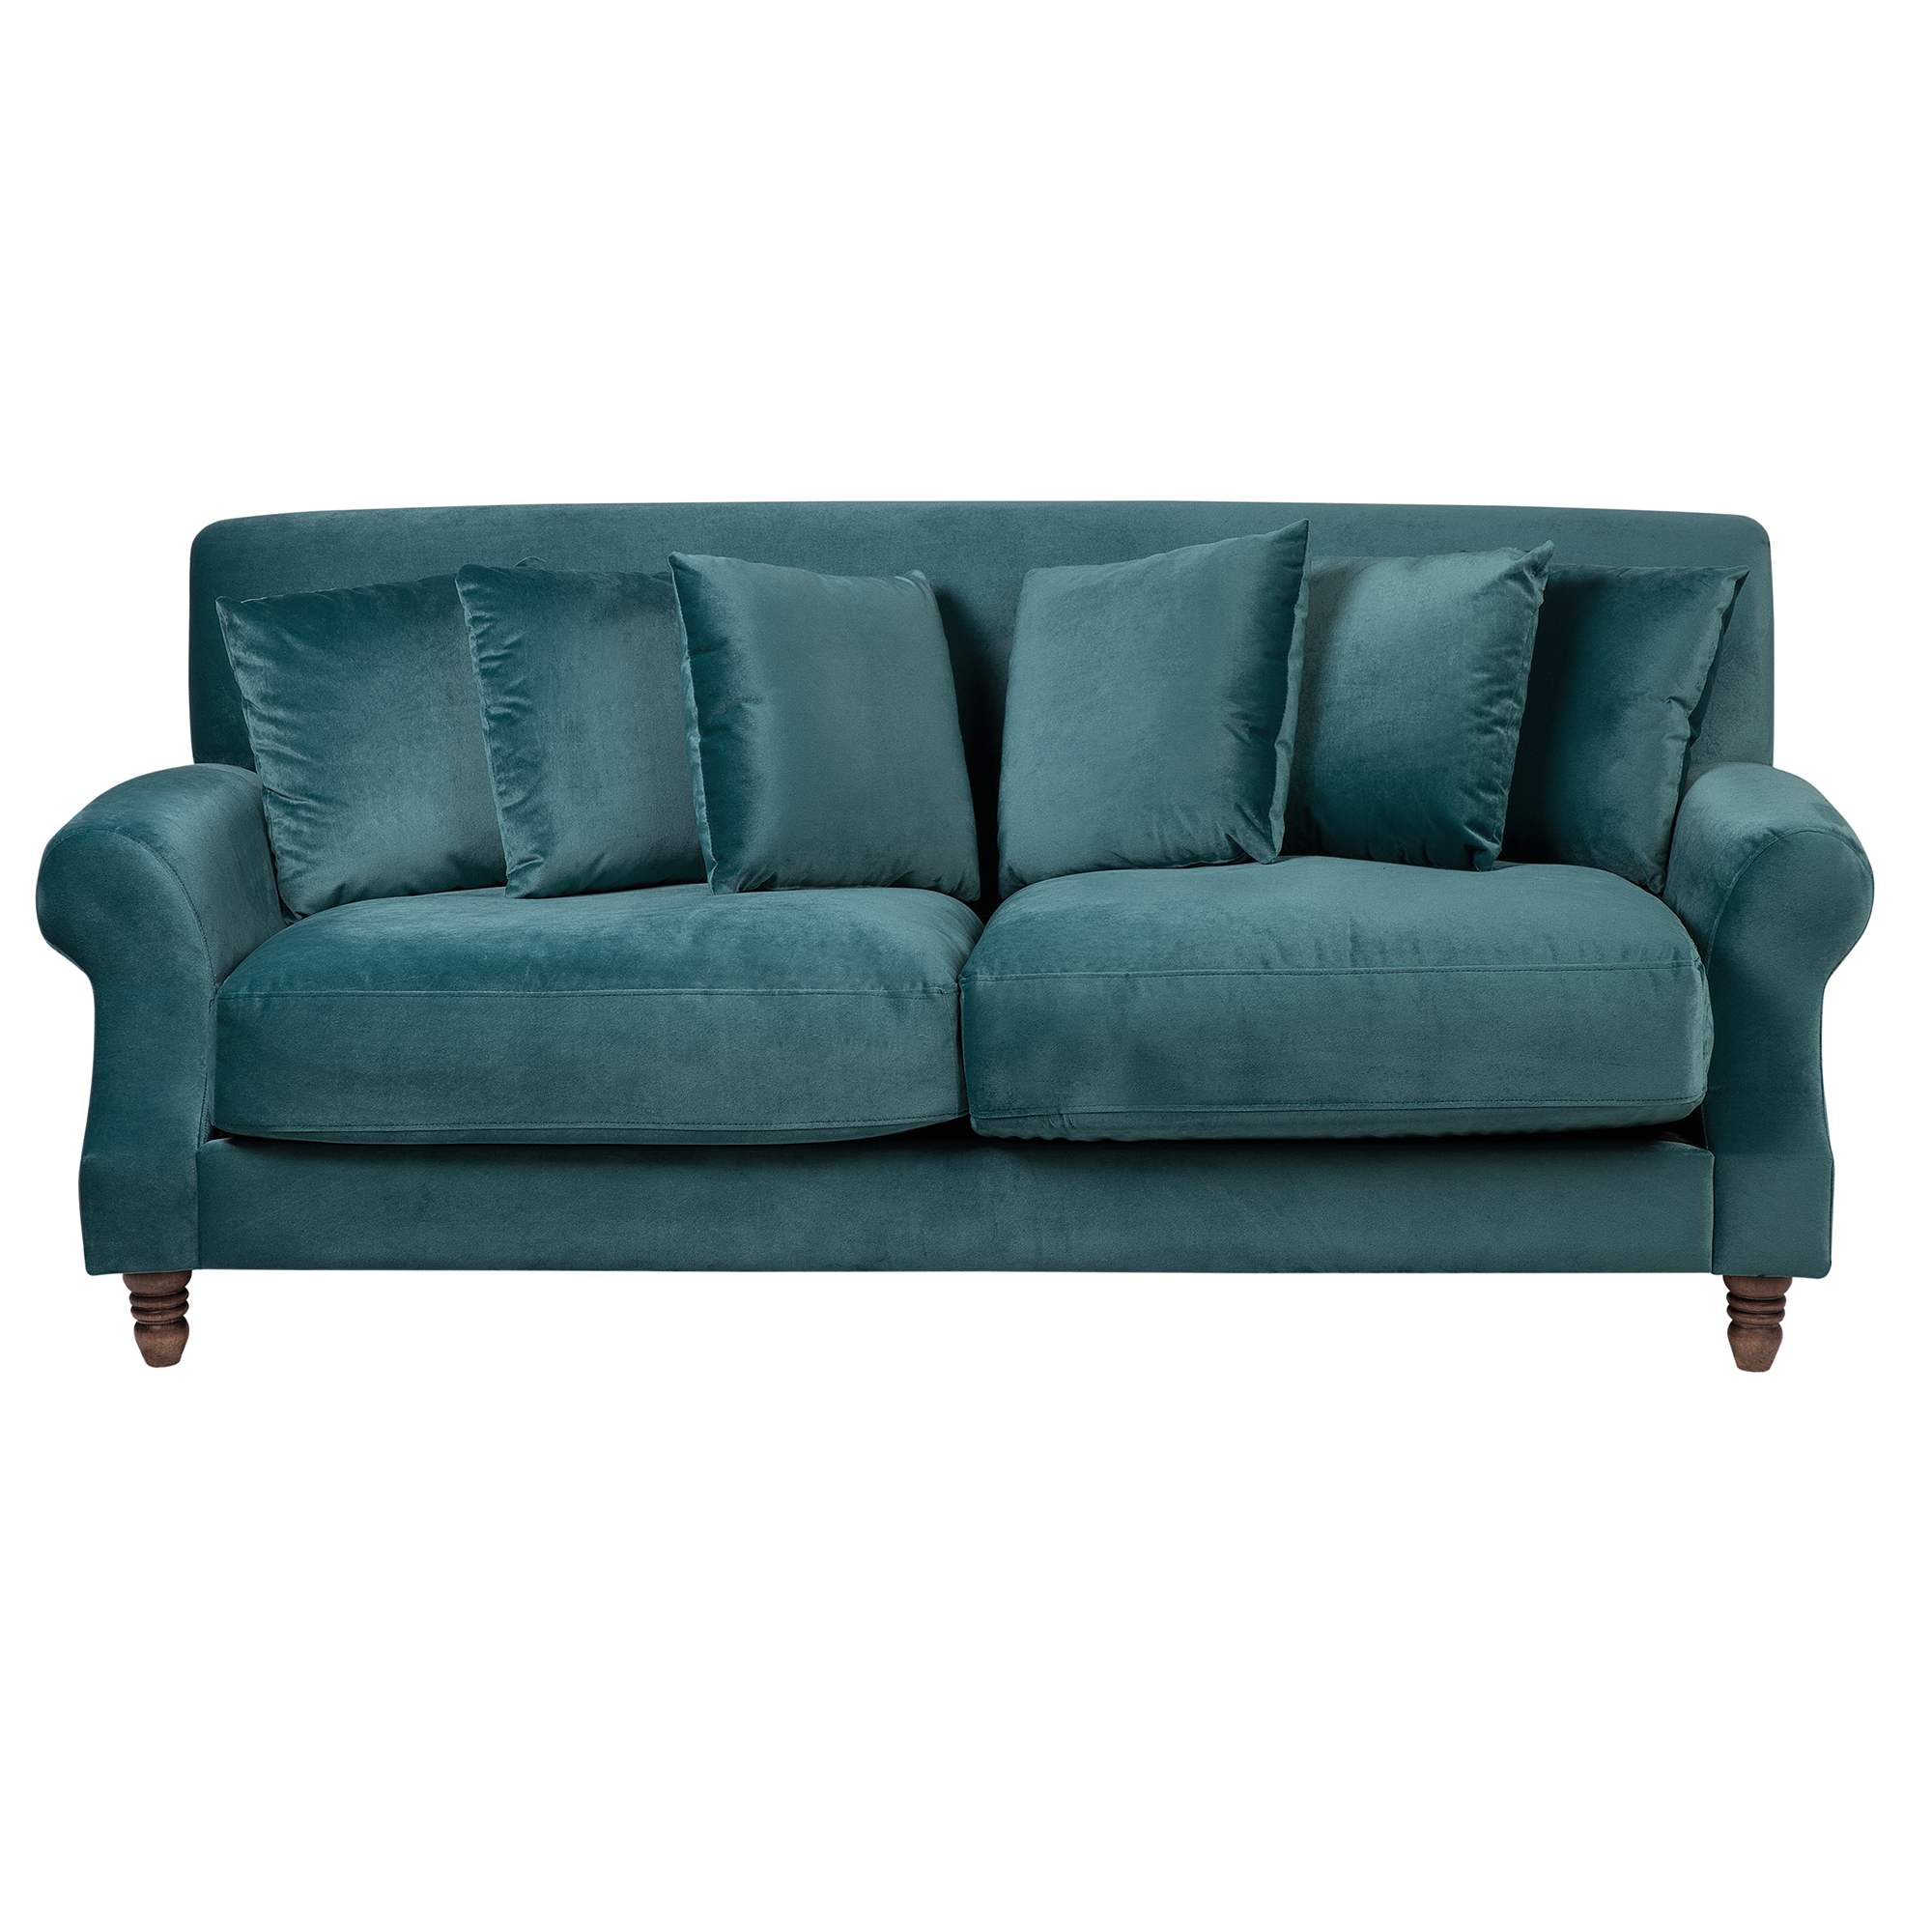 Beliani Sofa with 6 Pillows Blue Velvet Upholsery Light Wood Legs 3 Seater